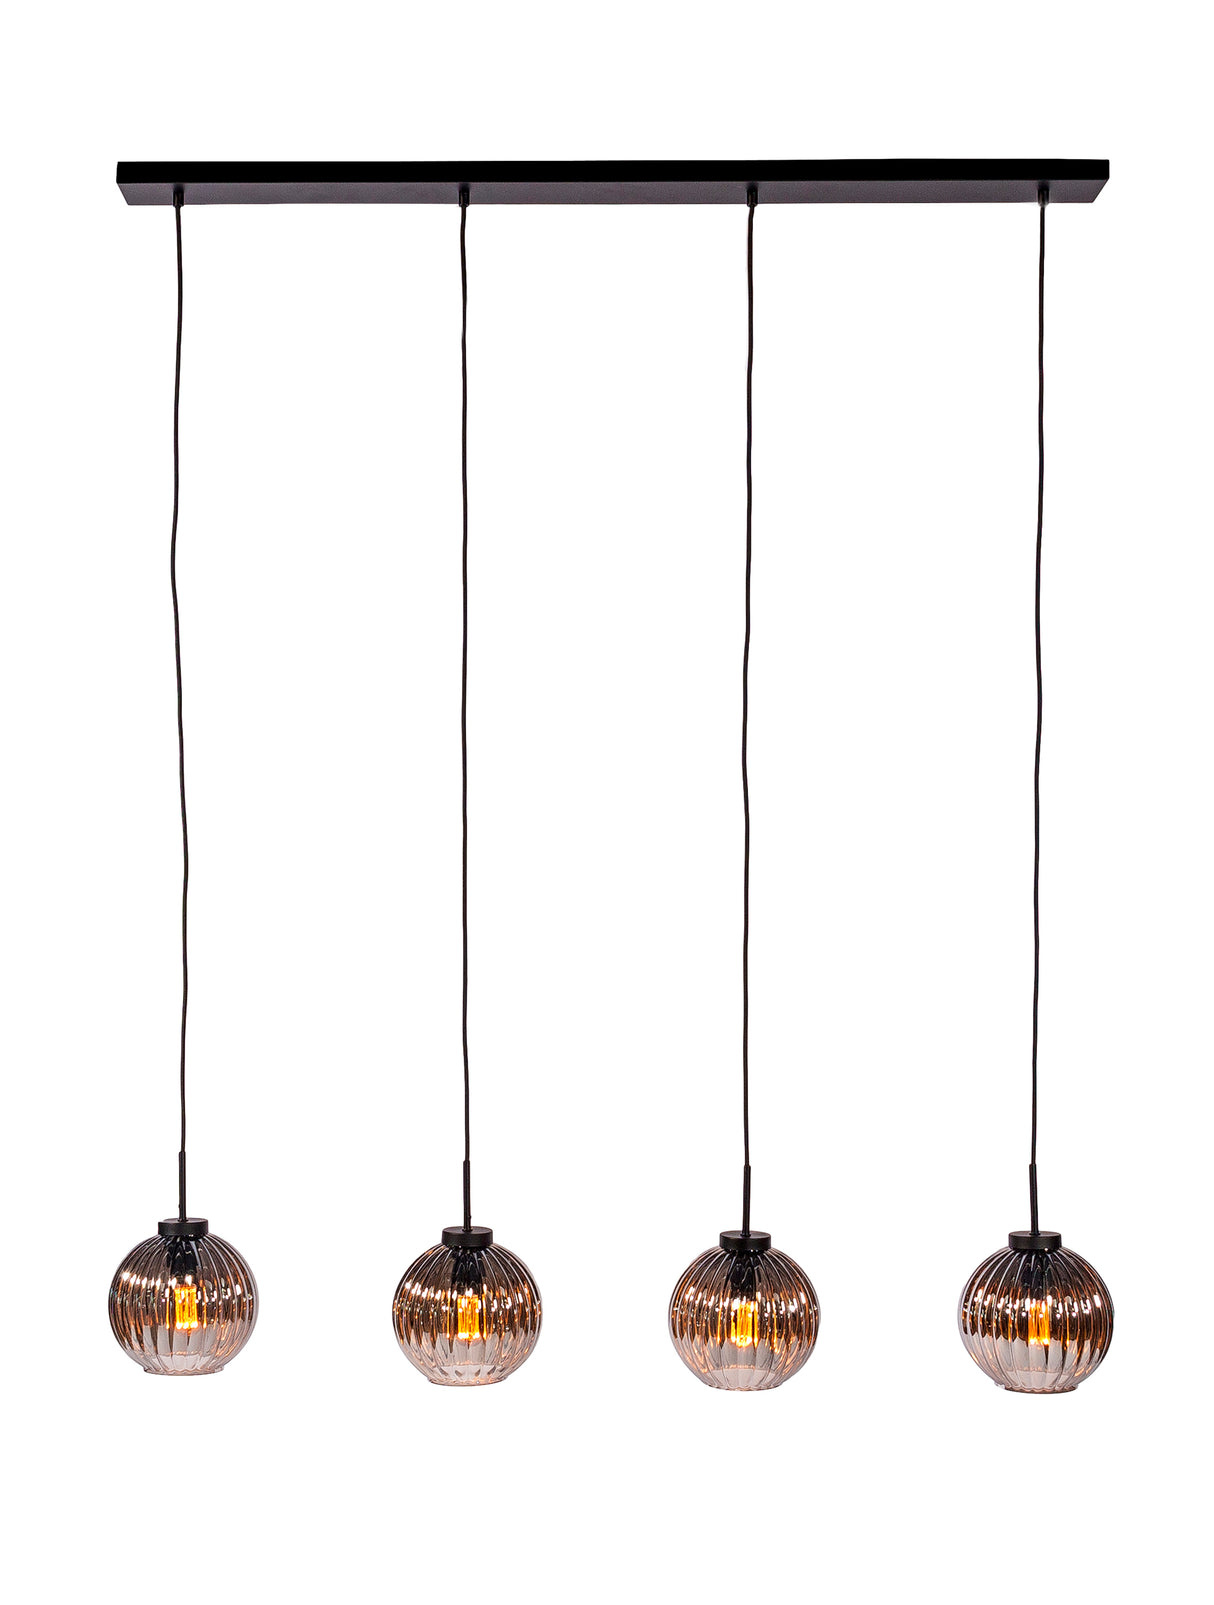 Lampe à suspension Viola 4 lumières verre marron